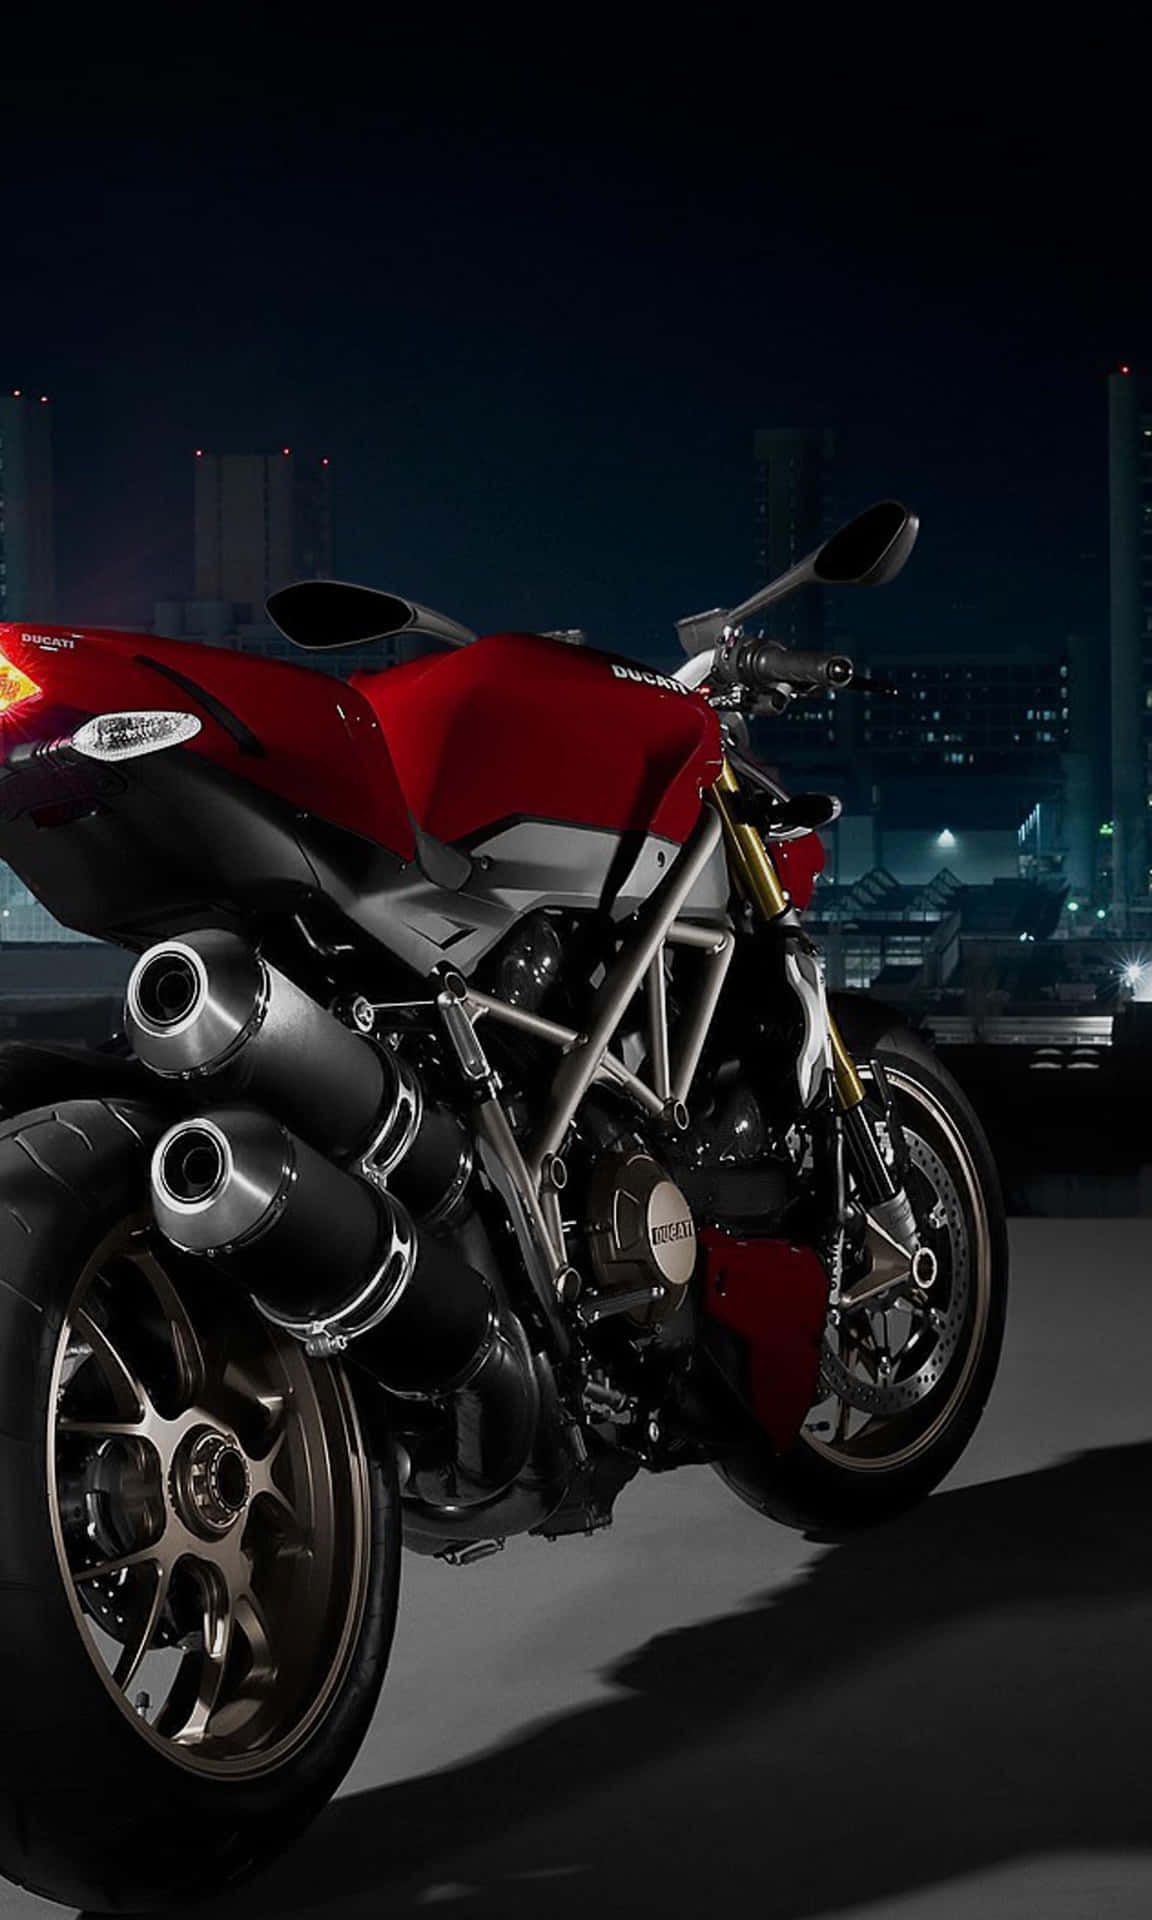 Smukbaggrund Med Street Fighter Ducati-motorcykel.